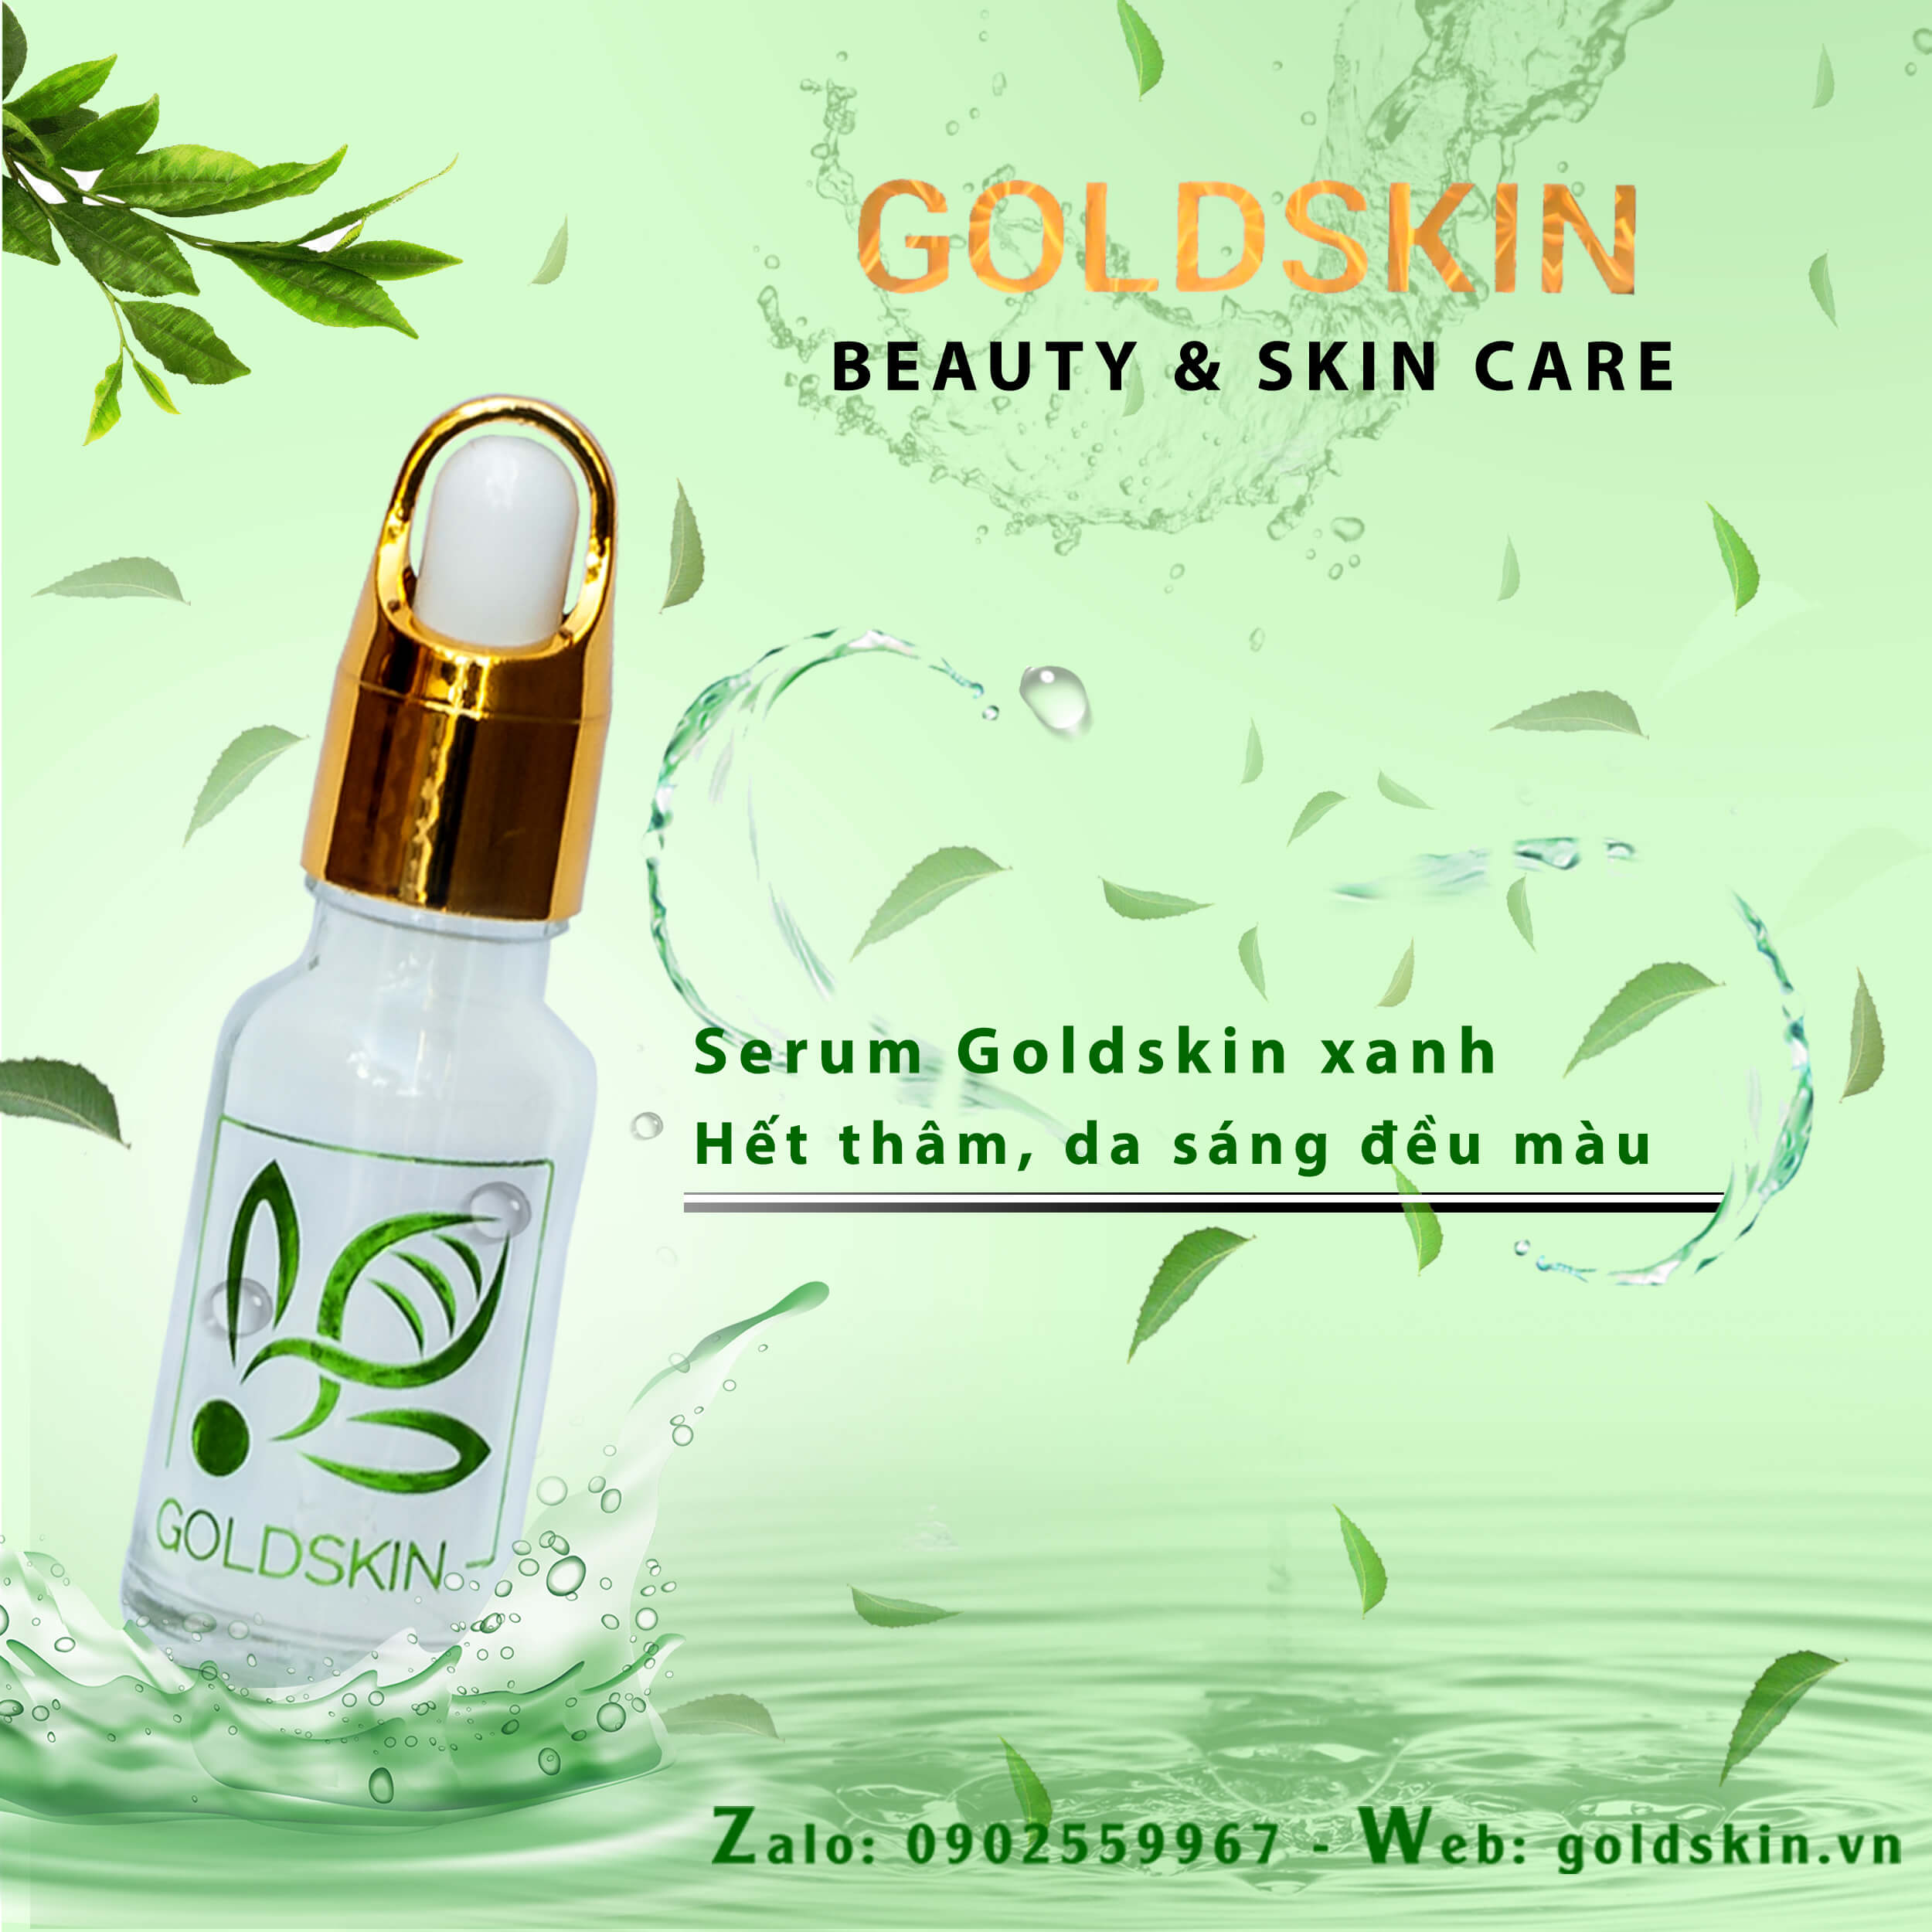 Serum Goldskin là sản phẩm hoàn toàn từ thiên nhiên và rất lành tính